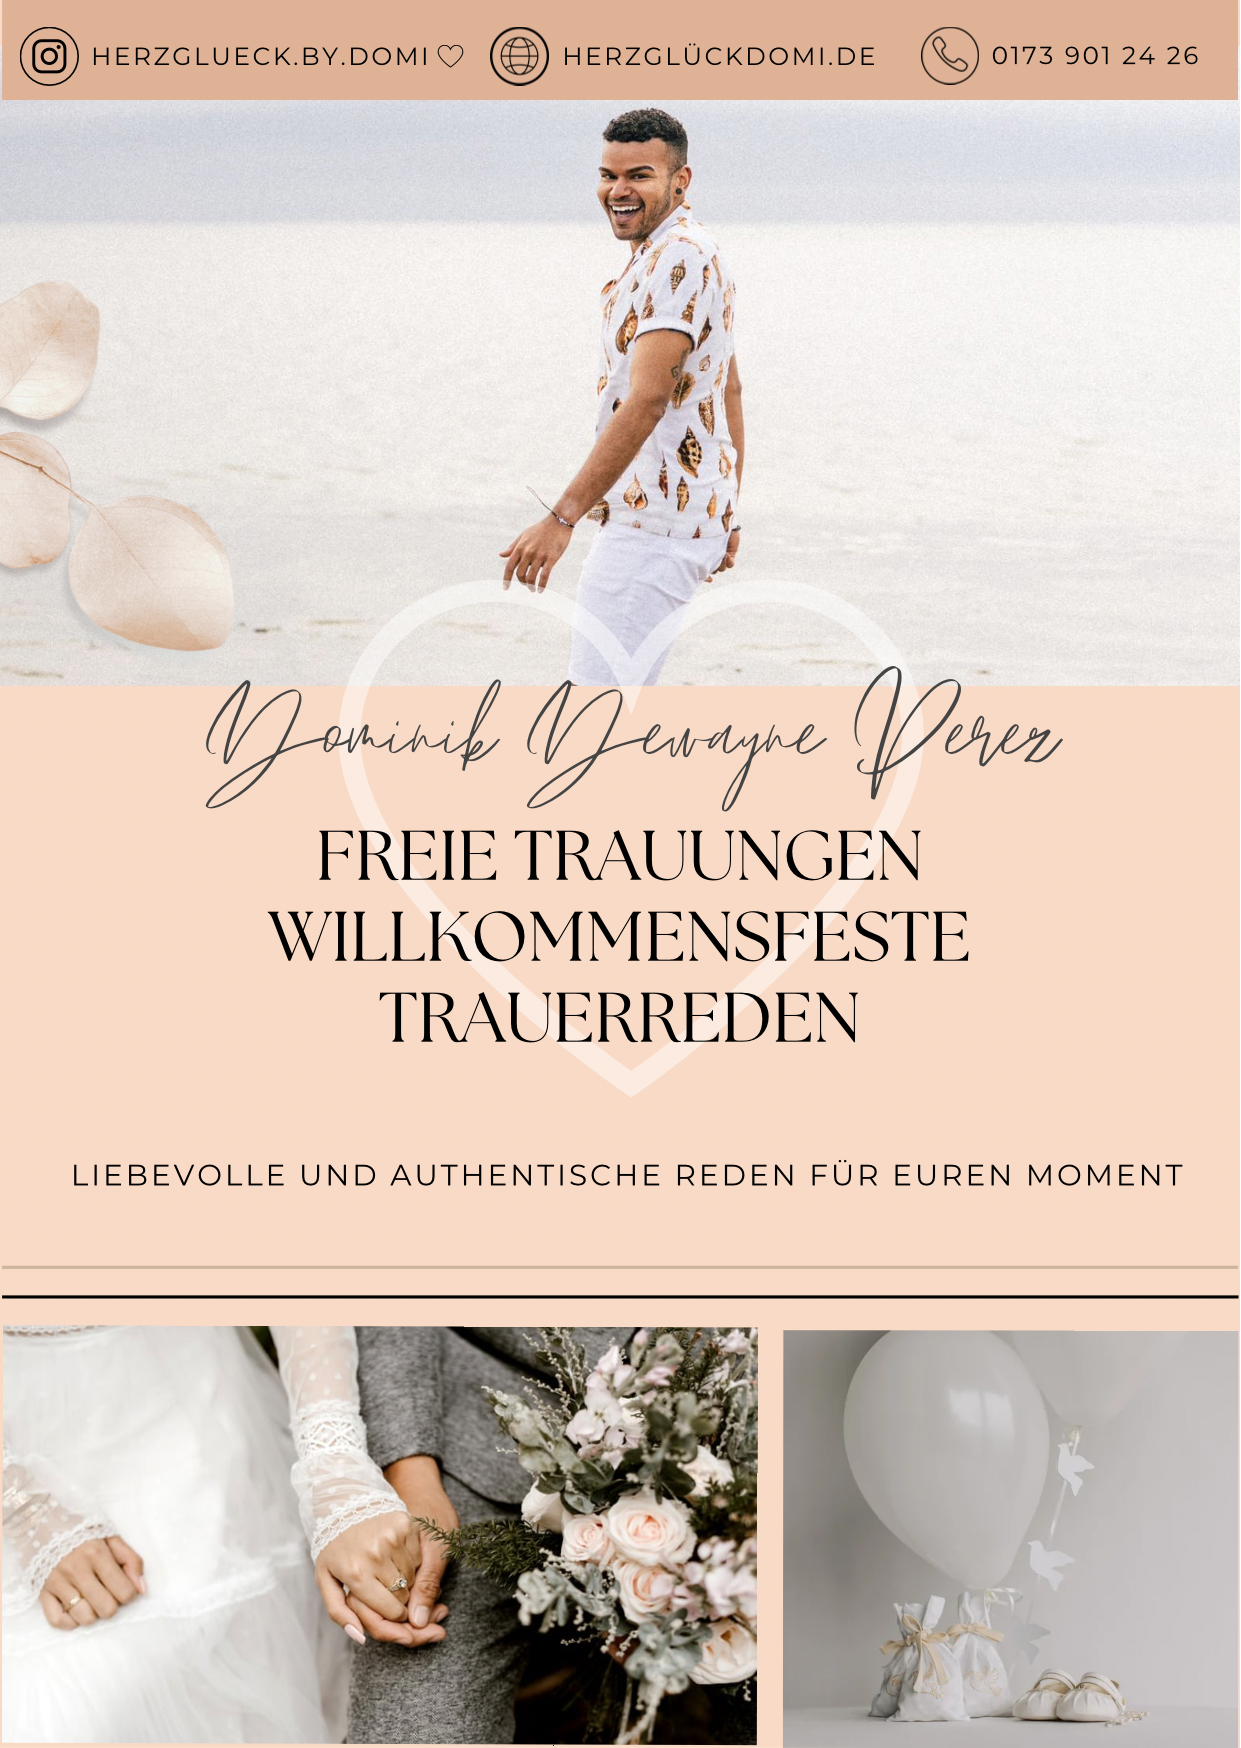 Bilder Freie Trauungen - Herzglück by Domi